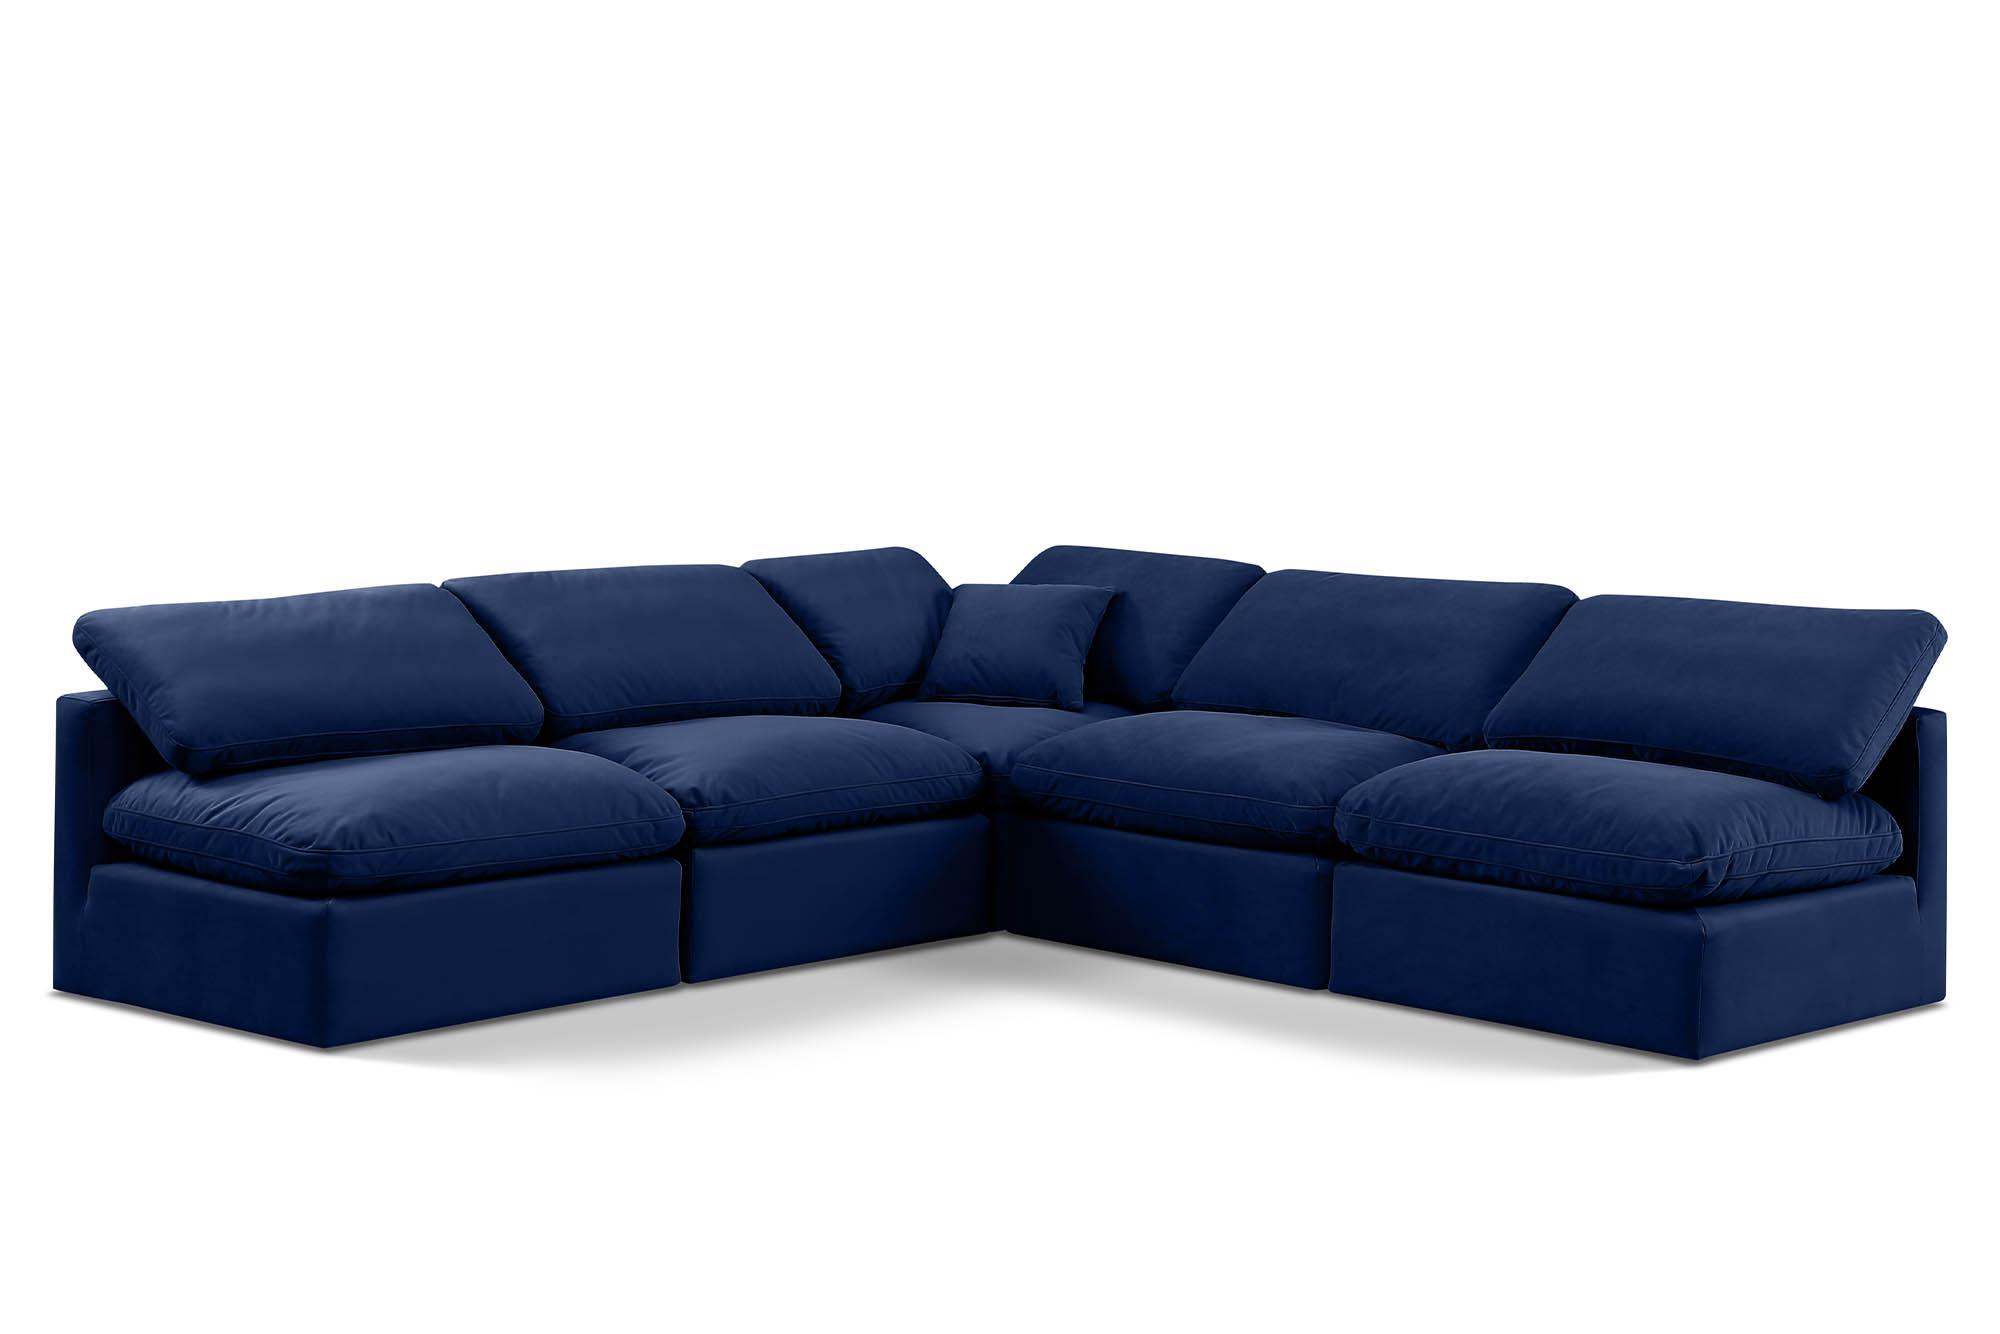 Contemporary, Modern Modular Sectional Sofa INDULGE 147Navy-Sec5B 147Navy-Sec5B in Navy Velvet